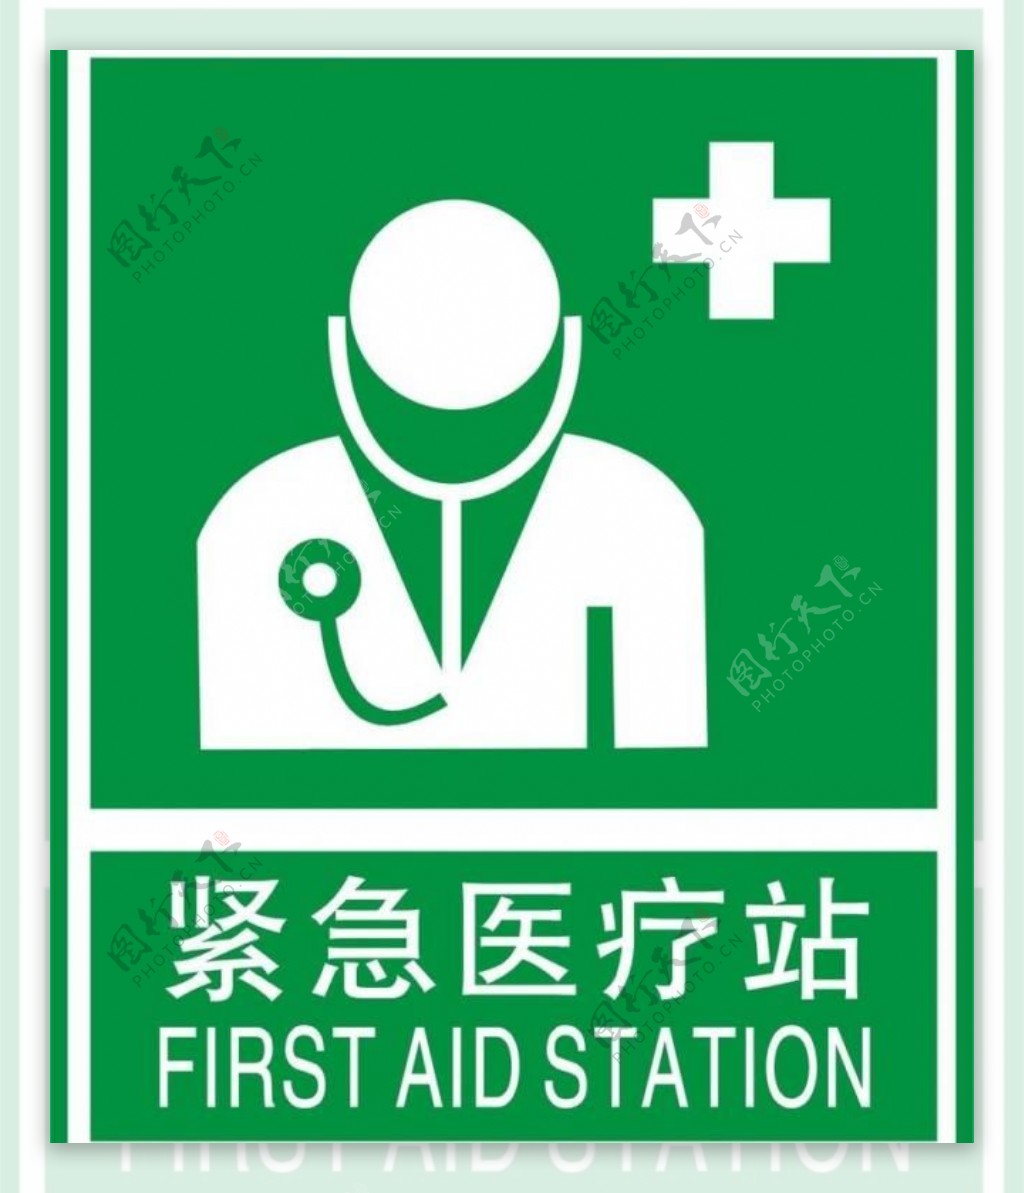 紧急卫生医疗站标示图片